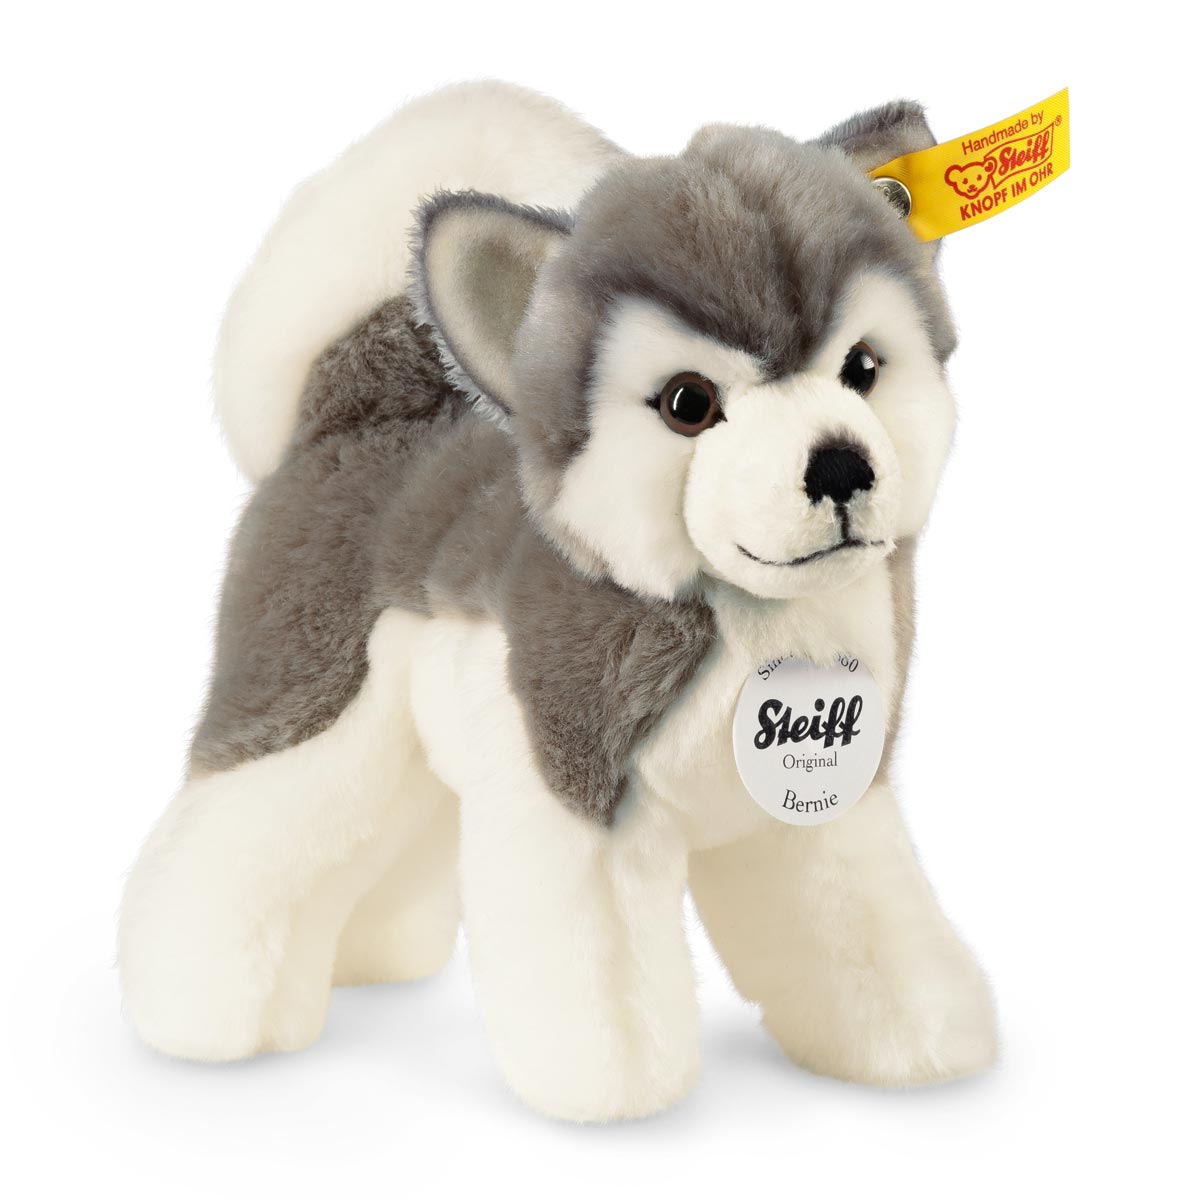 Steiff Bernie the Husky Soft Toy